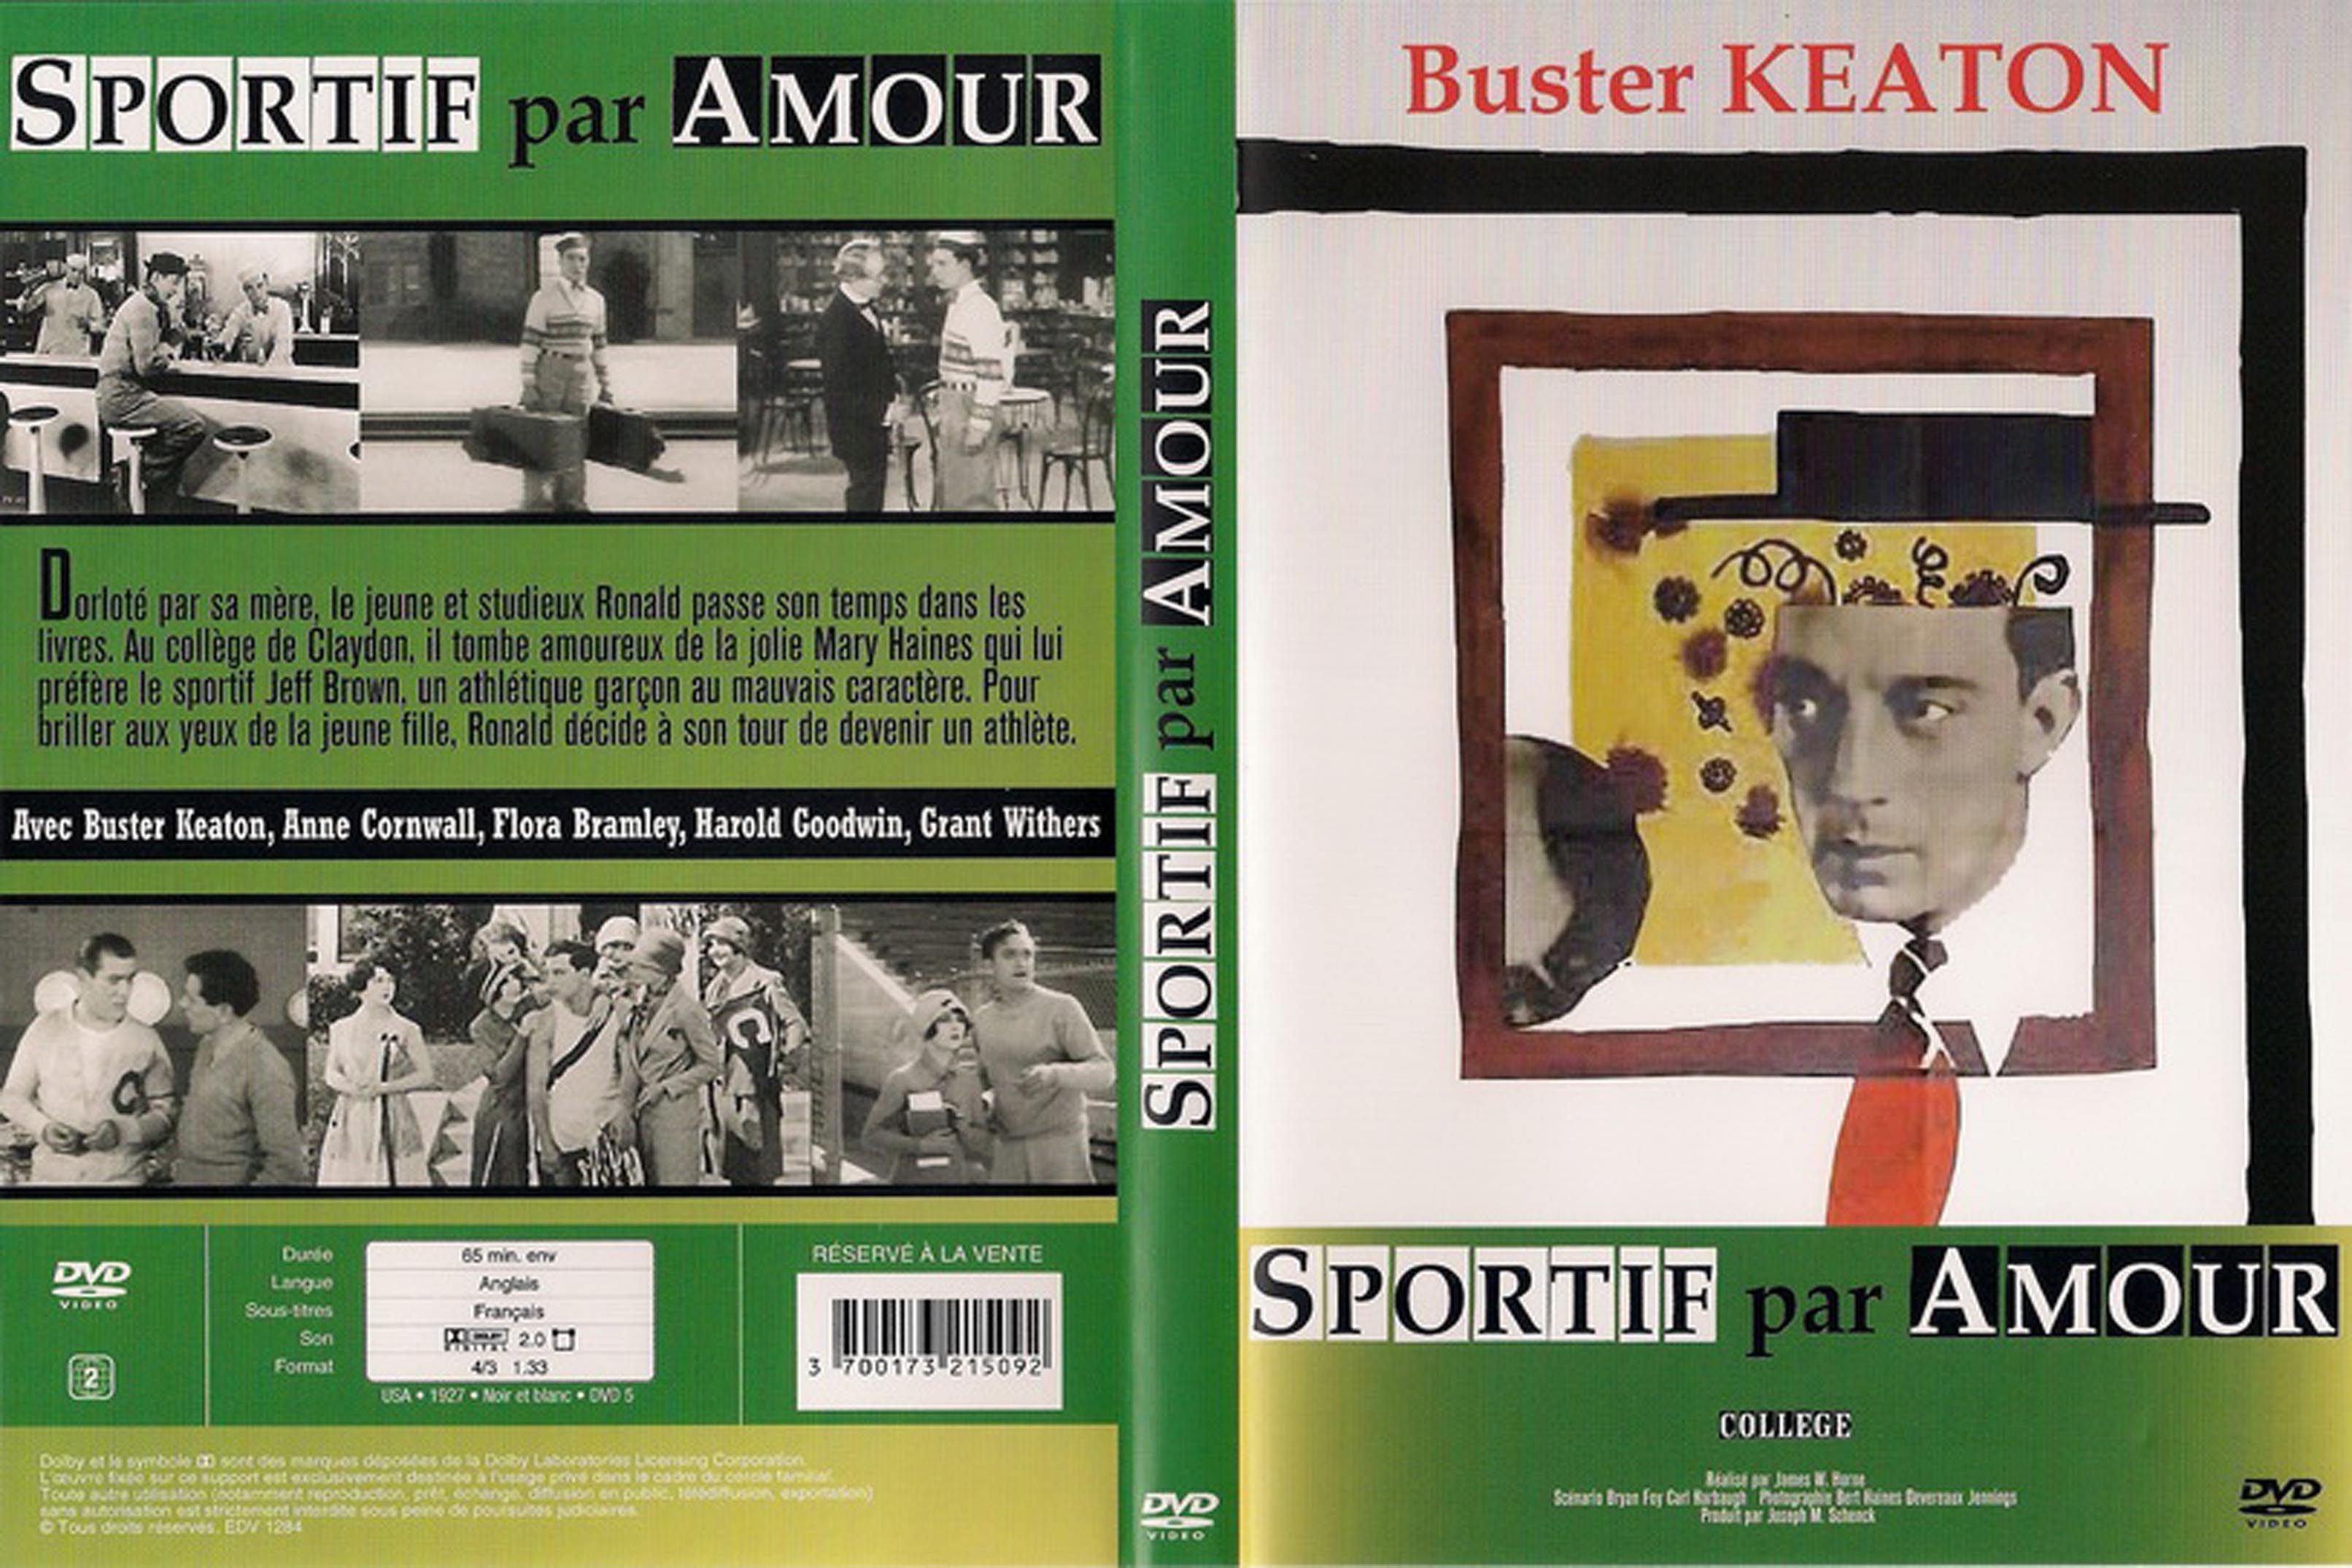 Jaquette DVD Buster Keaton -  sportif par amour